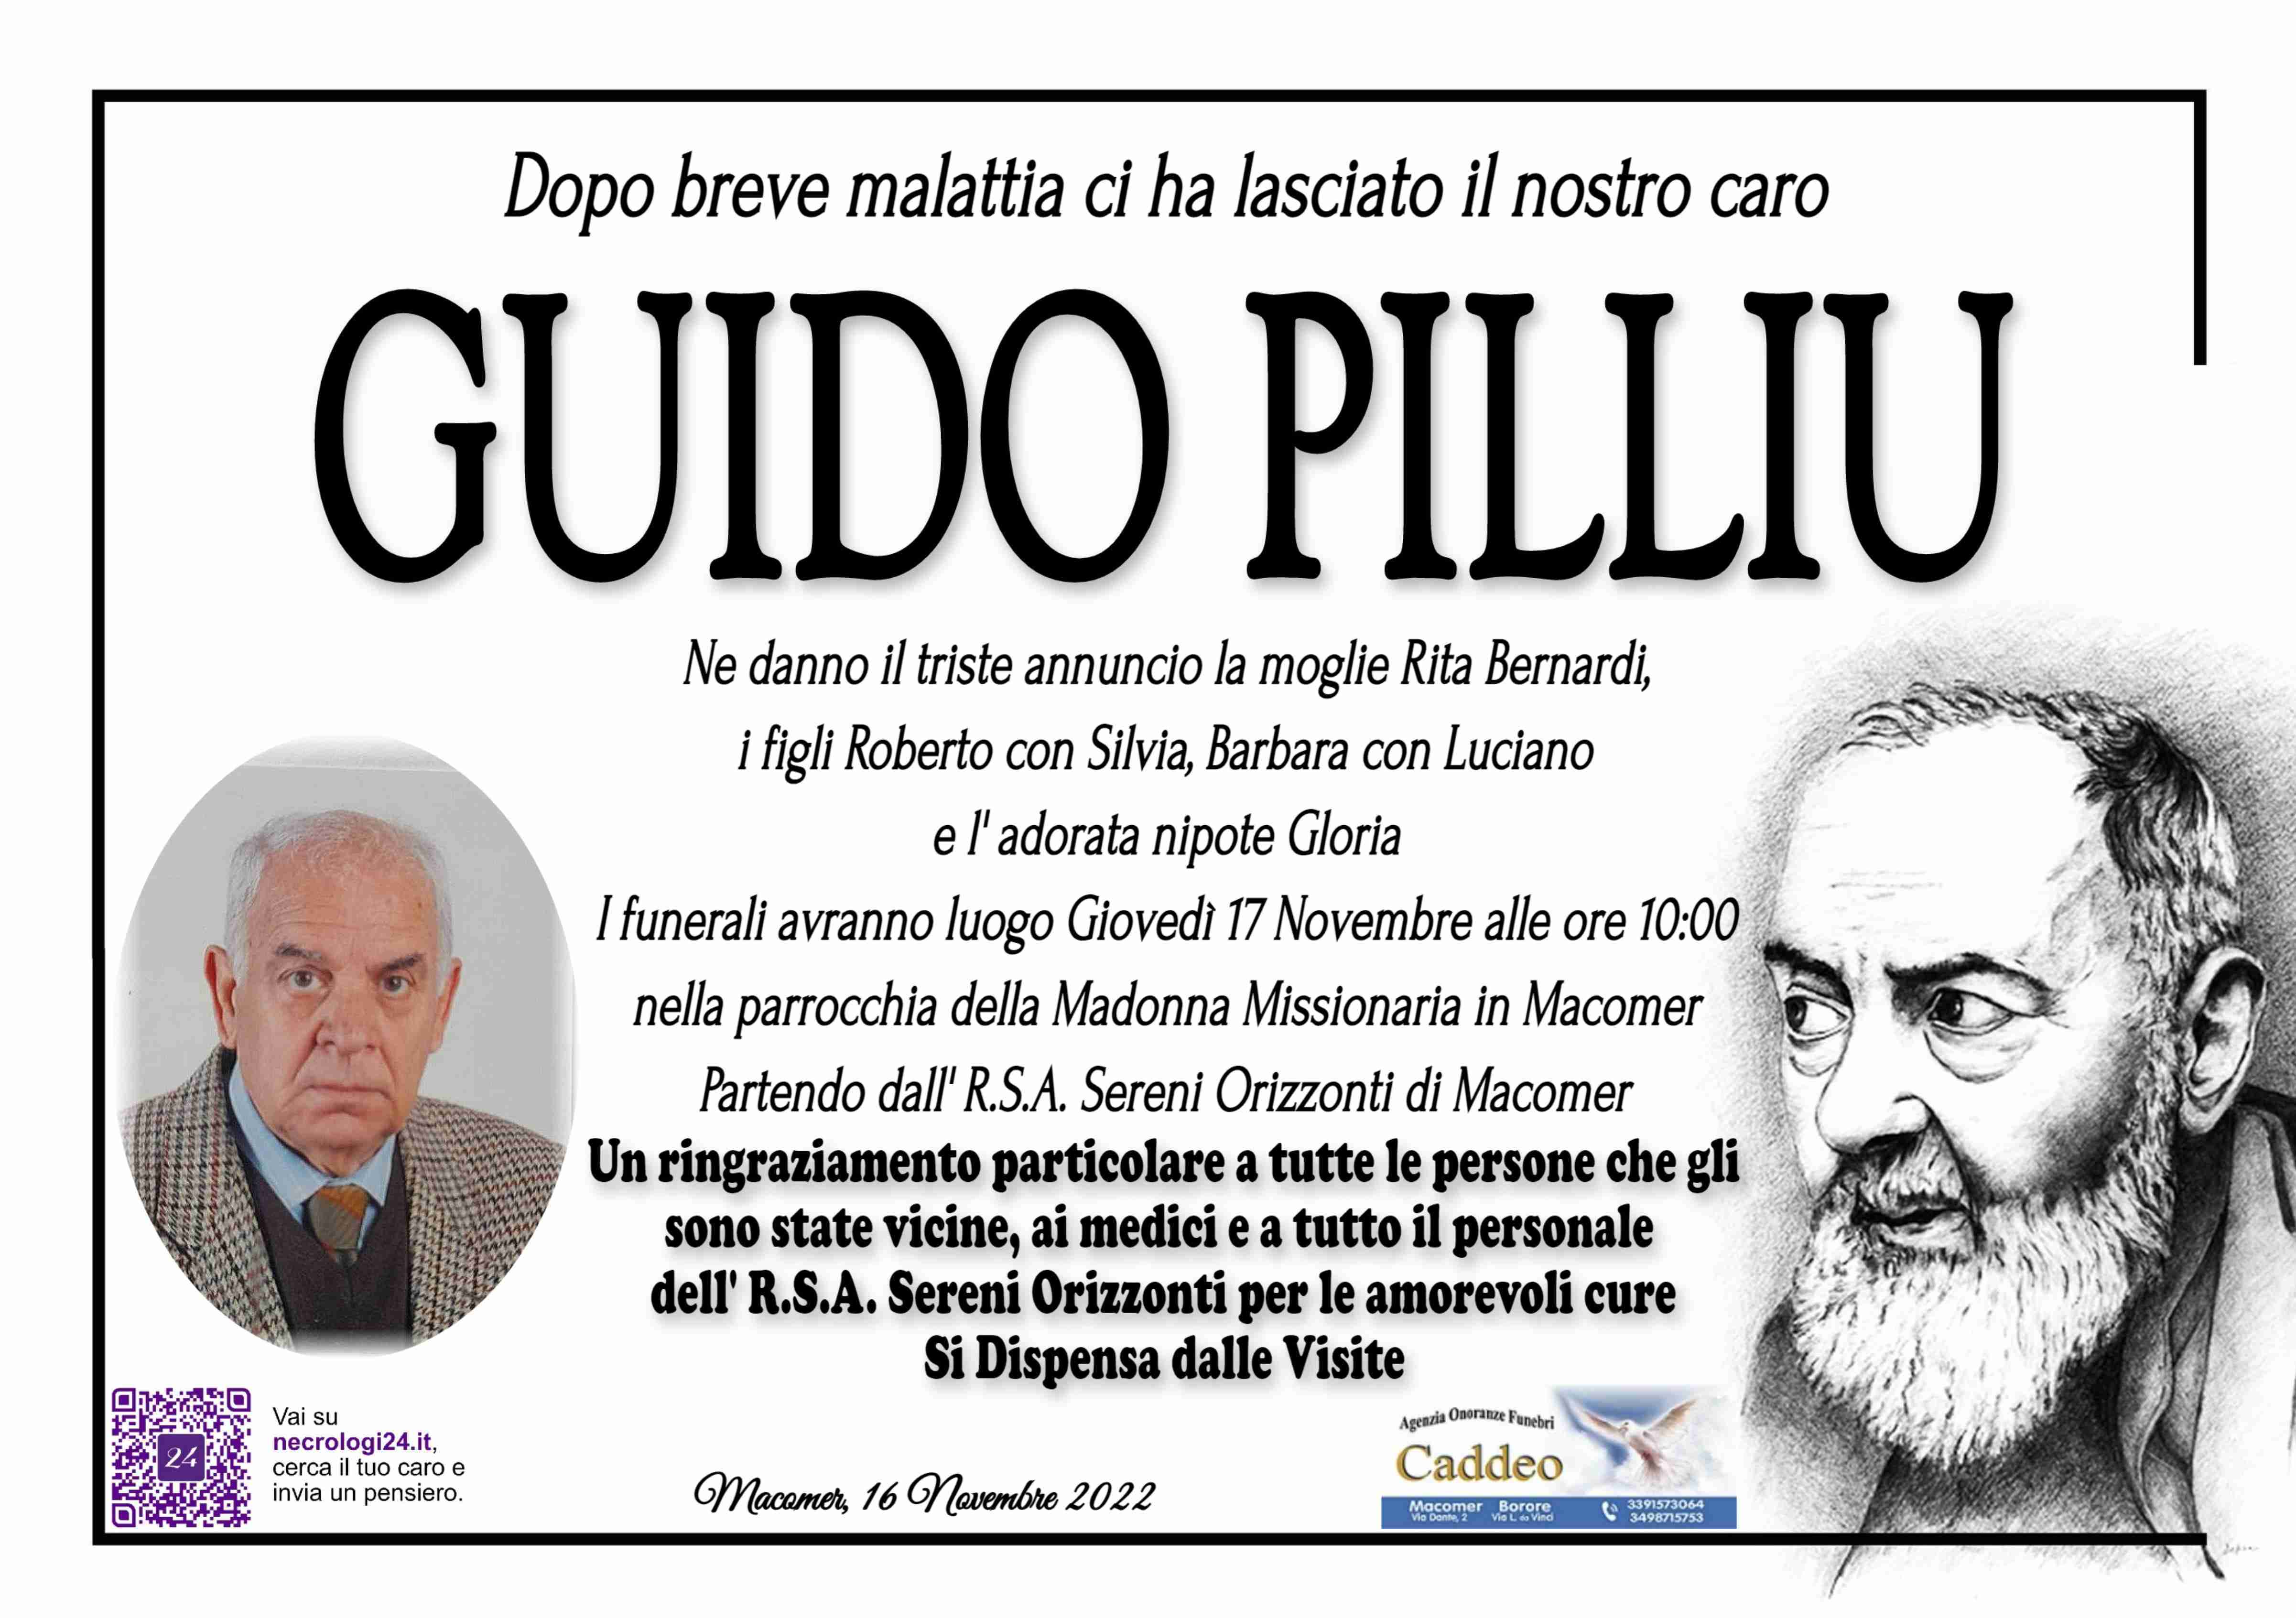 Guido Pilliu